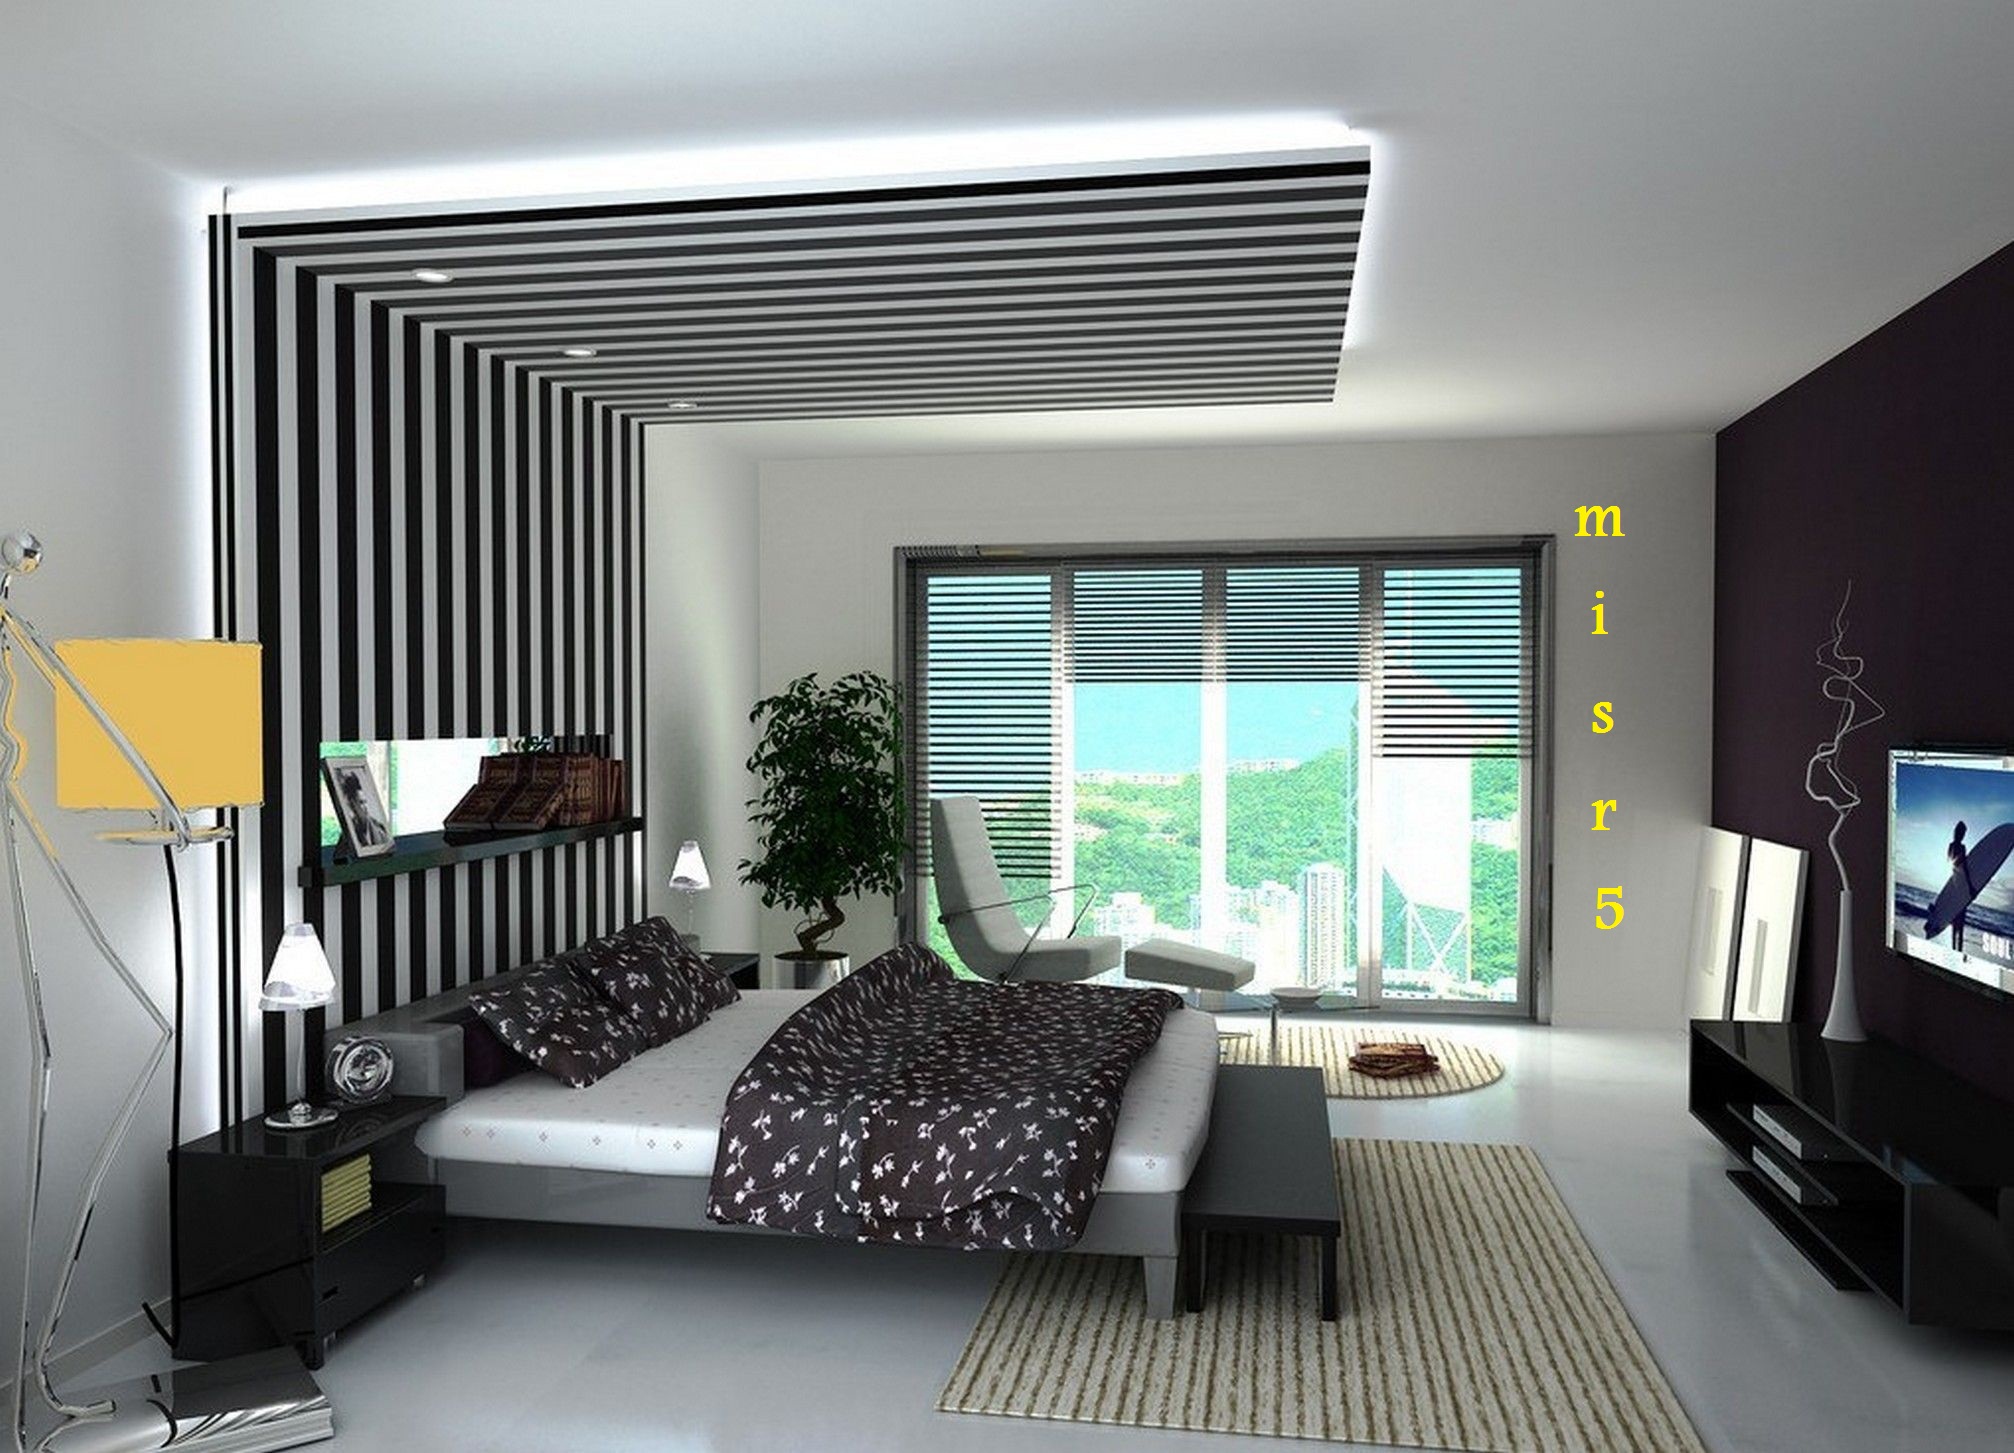 جبس بورد: أحدث أشكال جبس بورد 2022 لغرف النوم والصالة و مكتبات الجبس بورد بالصور 6